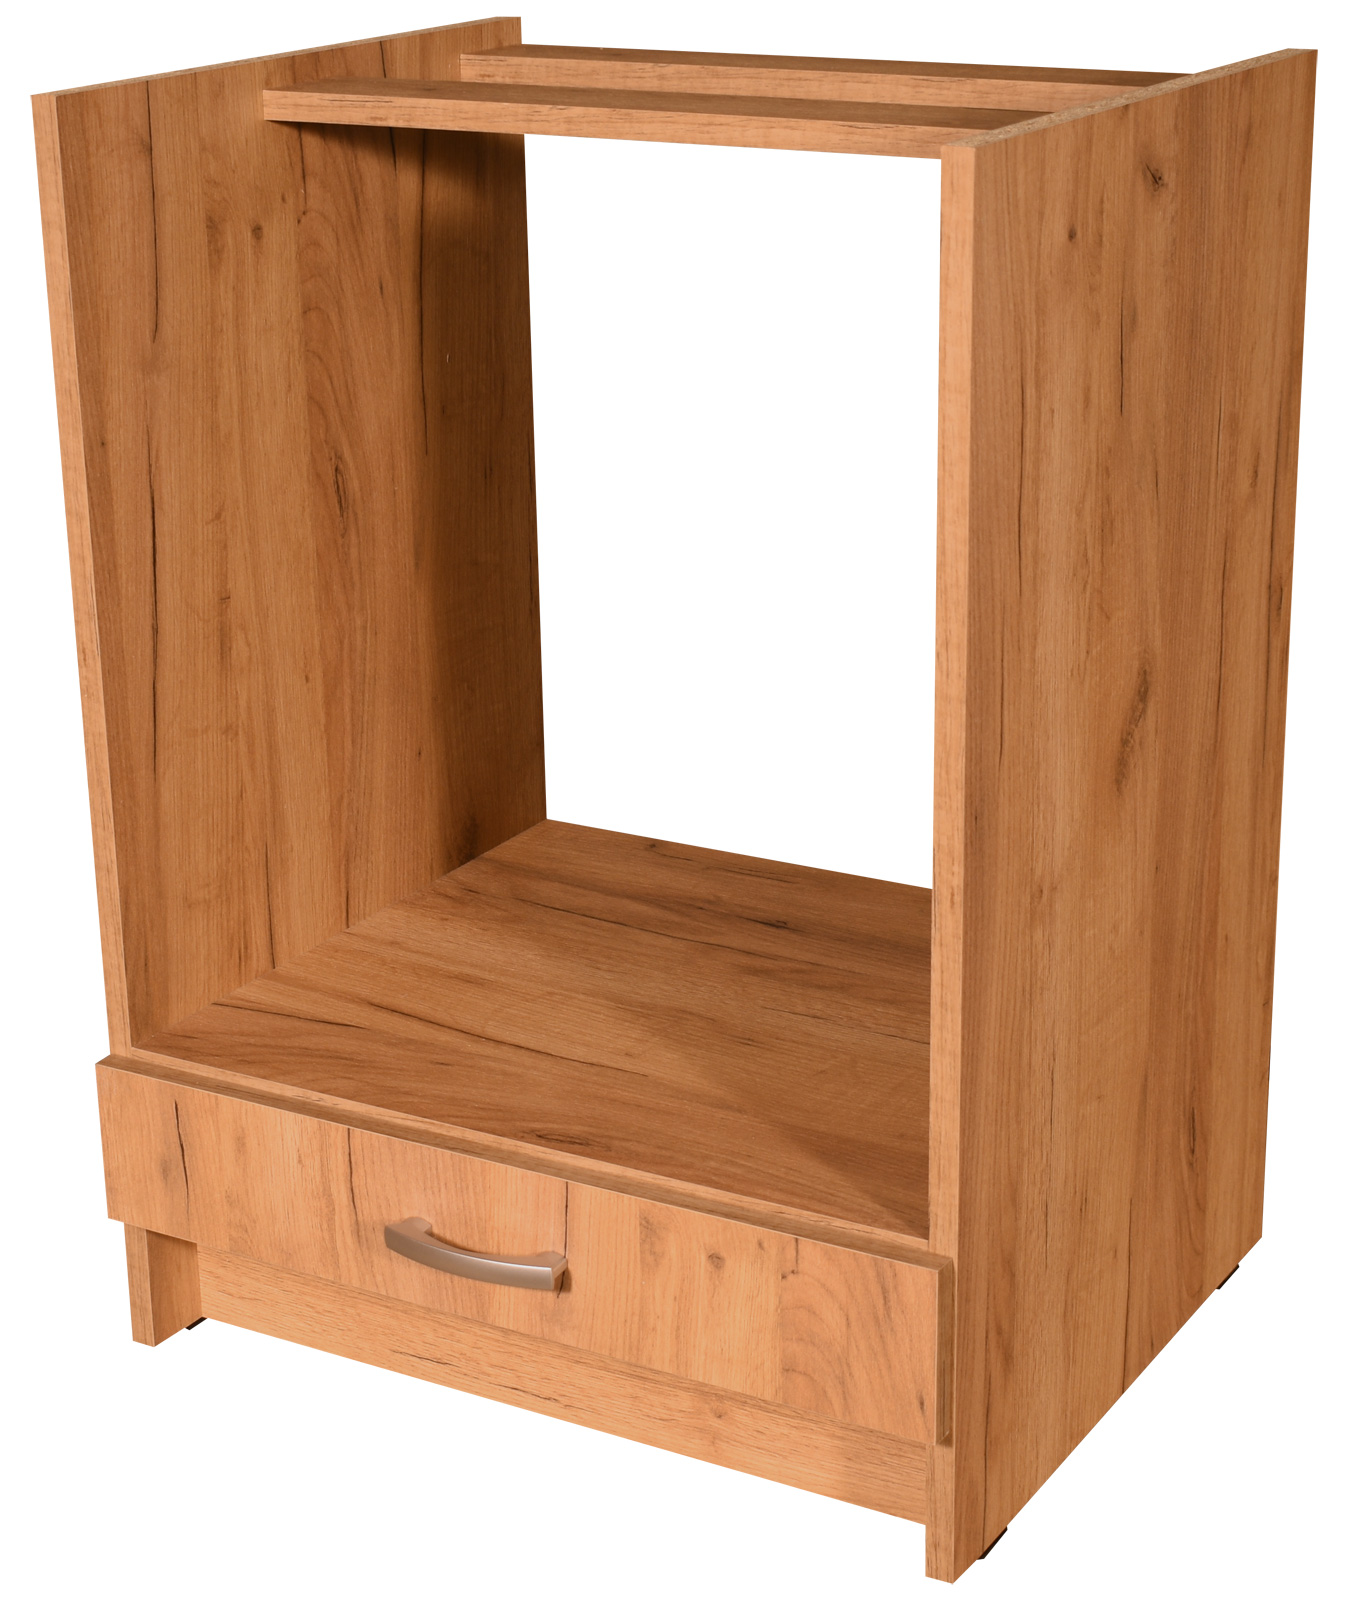 Kuchyňská skříňka pro vestavnou troubu Craft zlatý 60 cm